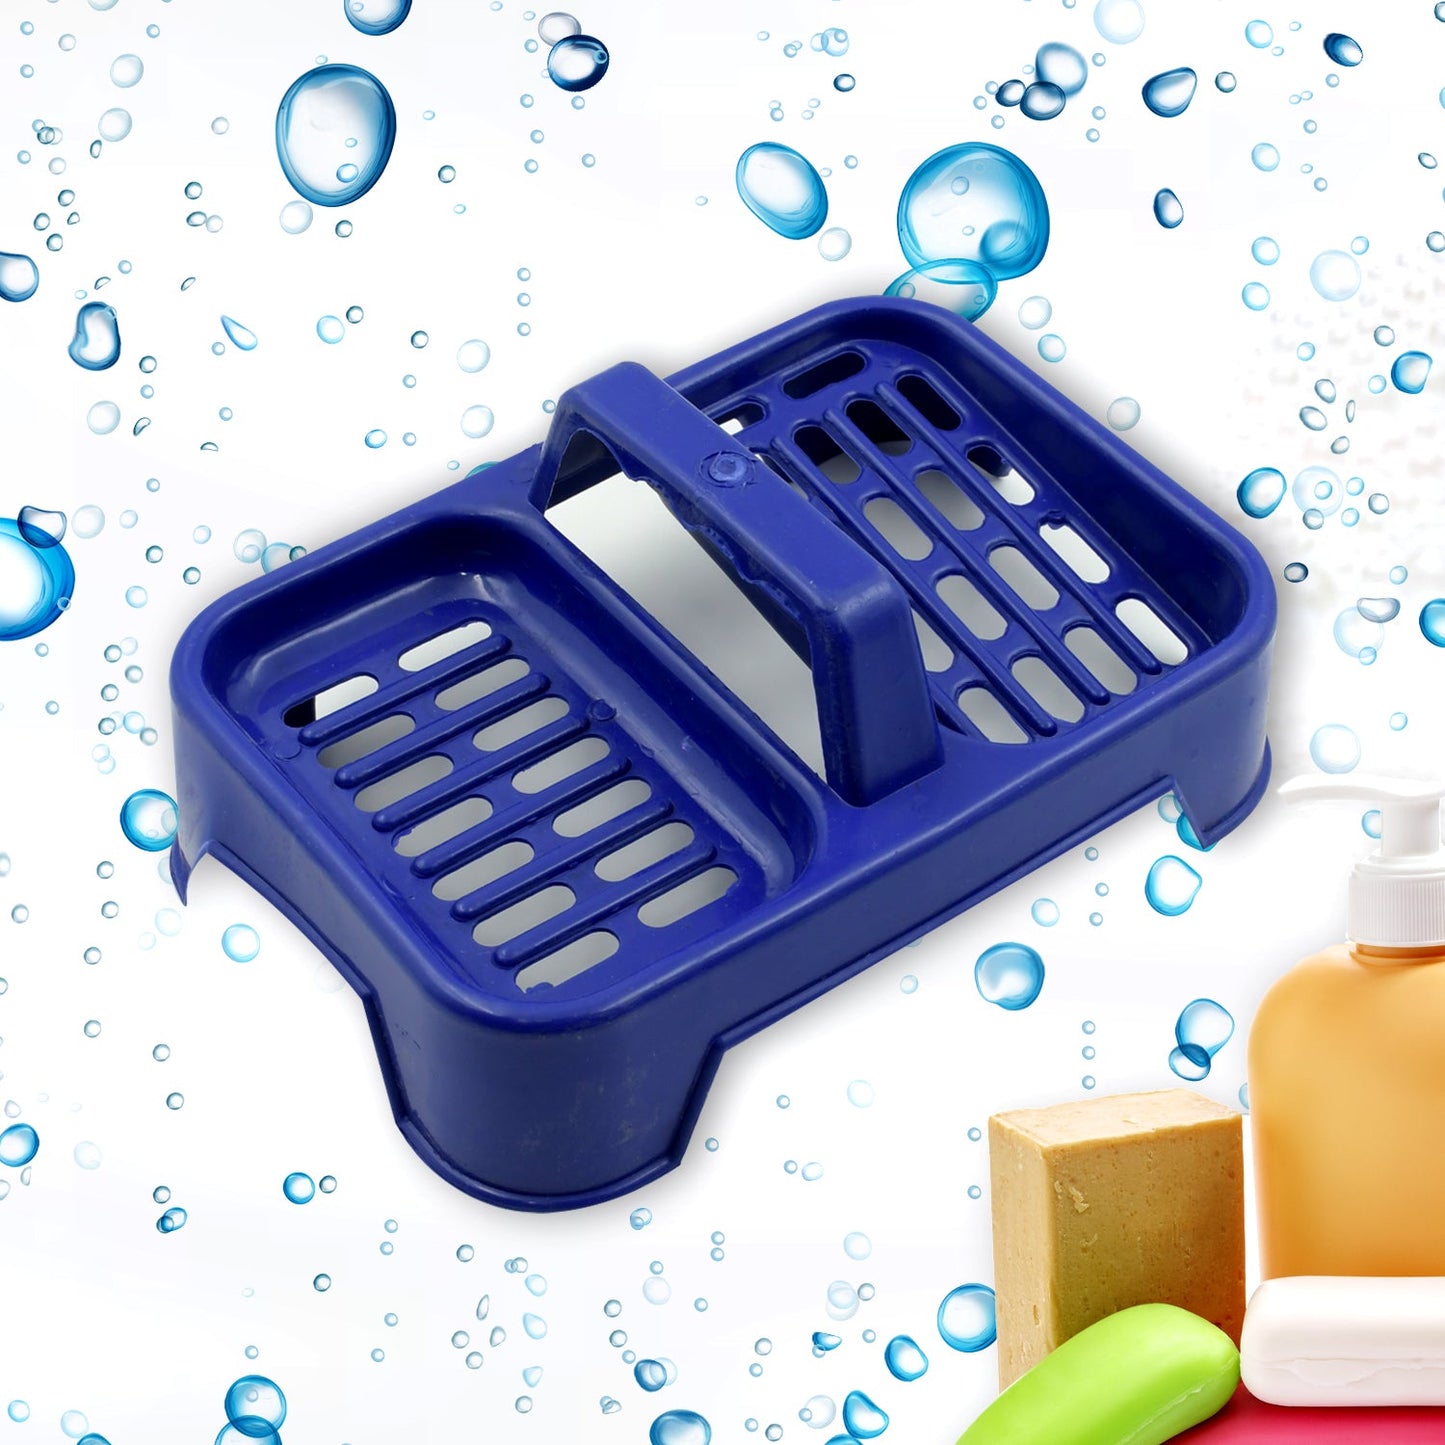 8729 2in1 Plastic Soap Case / Soap Dish / Soap Stand, 2 Section Plastic Soap Case Soap Holder Soap Dish For Bathroom Kitchen Sink (1 Pc / Multicolor )